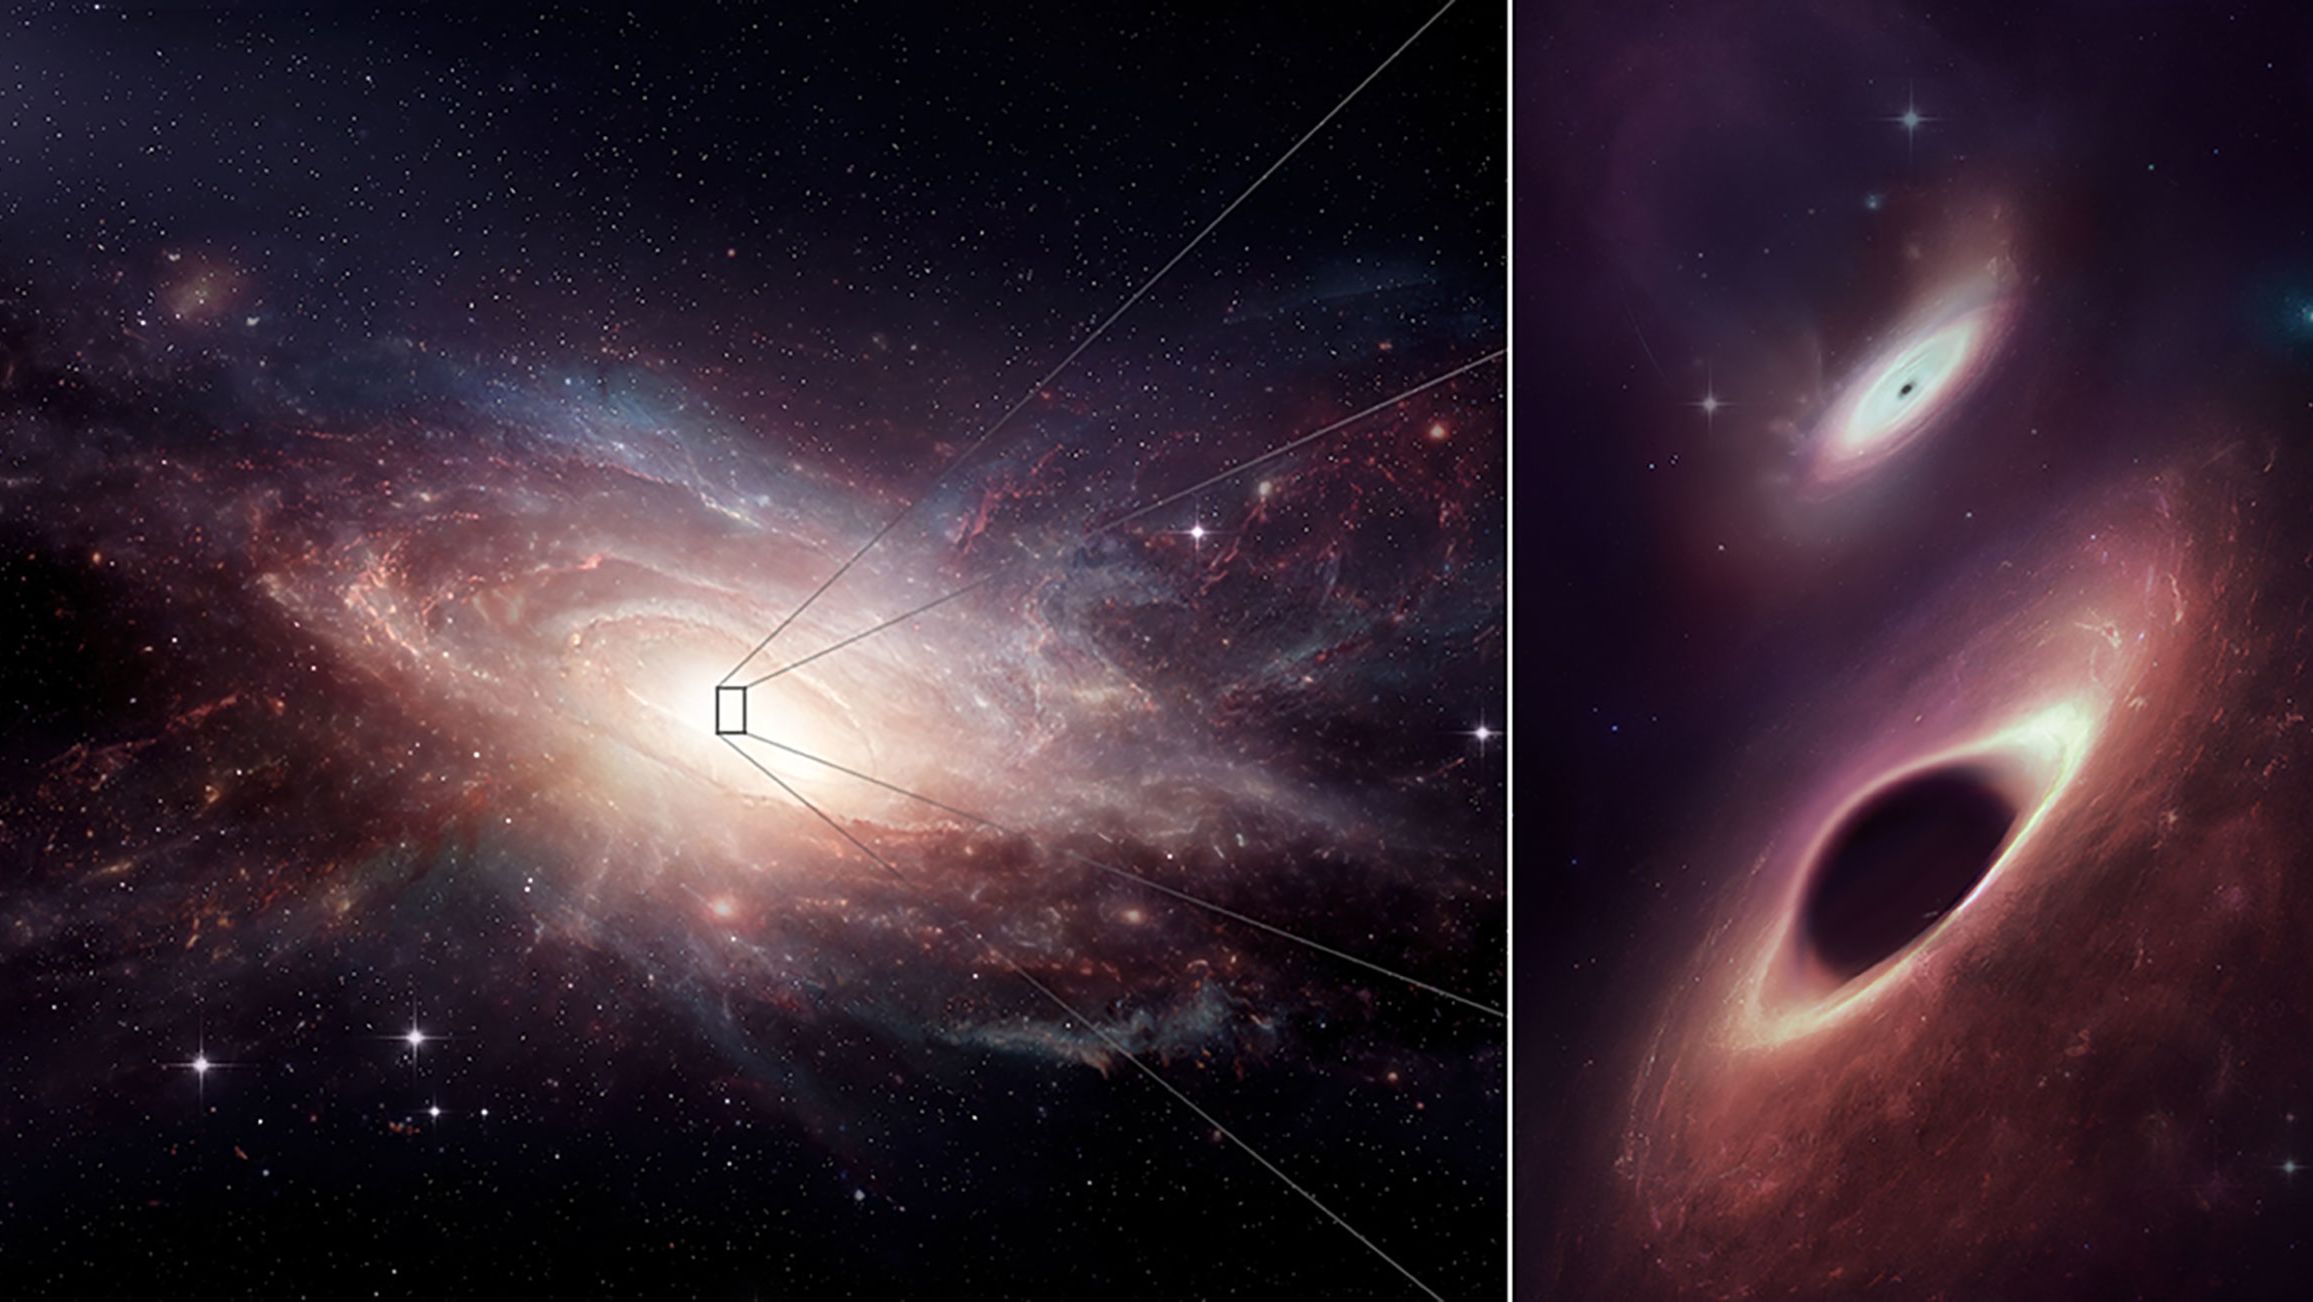 Hố đen siêu khổng lồ: Những hình ảnh về hố đen siêu khổng lồ luôn đem đến những trải nghiệm đầy kì vĩ và sự tò mò cho những người yêu khoa học. Bạn có muốn khám phá những bí ẩn của hố đen và tìm hiểu những điều mới mẻ về vũ trụ? Hãy xem ngay hình ảnh về hố đen siêu khổng lồ này!